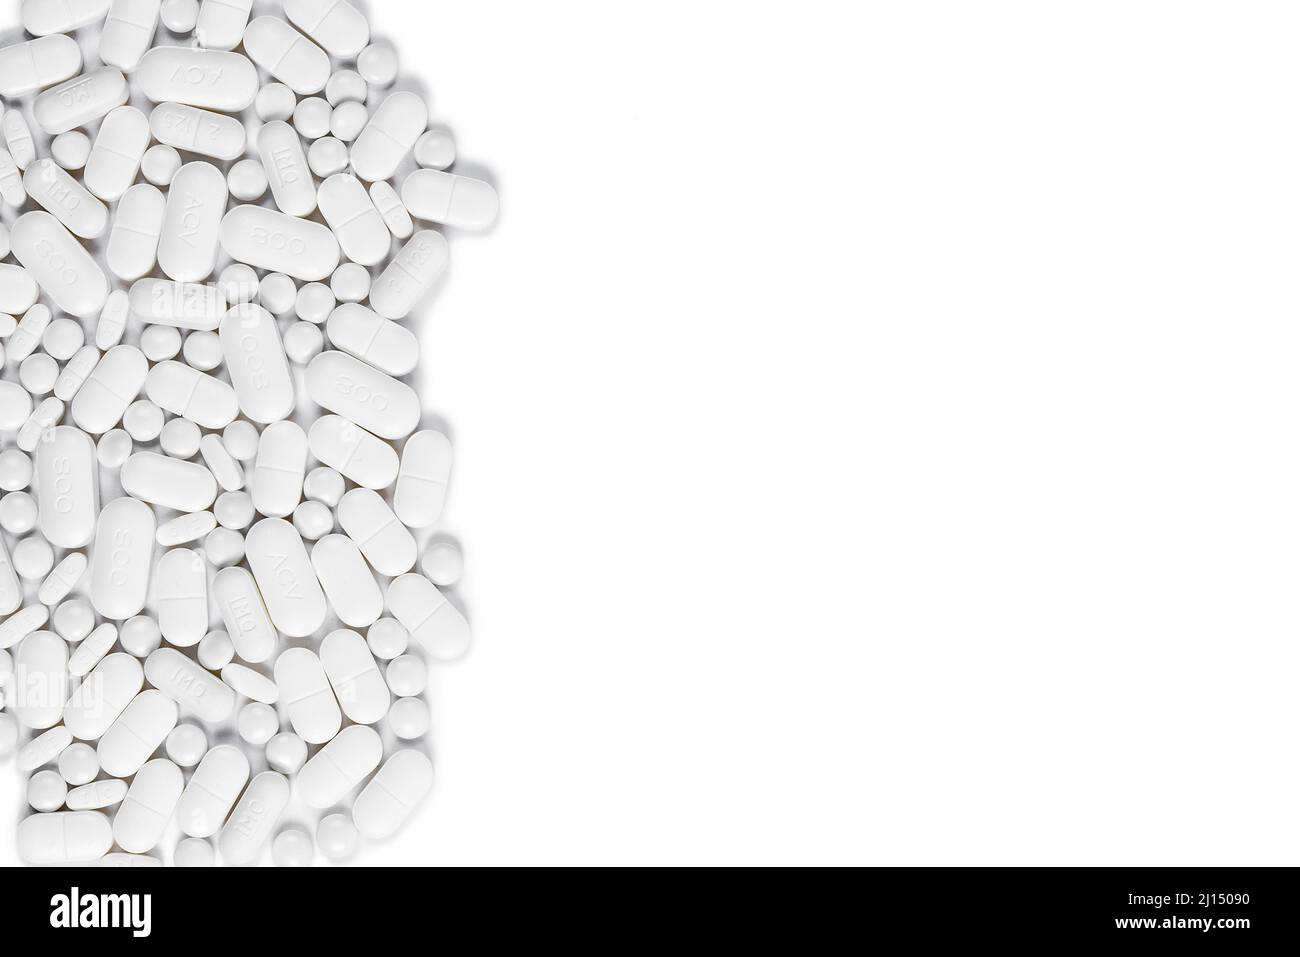 Auswahl von Pillen und Tabletten auf weißem Hintergrund, Platz für Kopien - Prophylaxe-Pillen für Krebspatienten Stockfoto